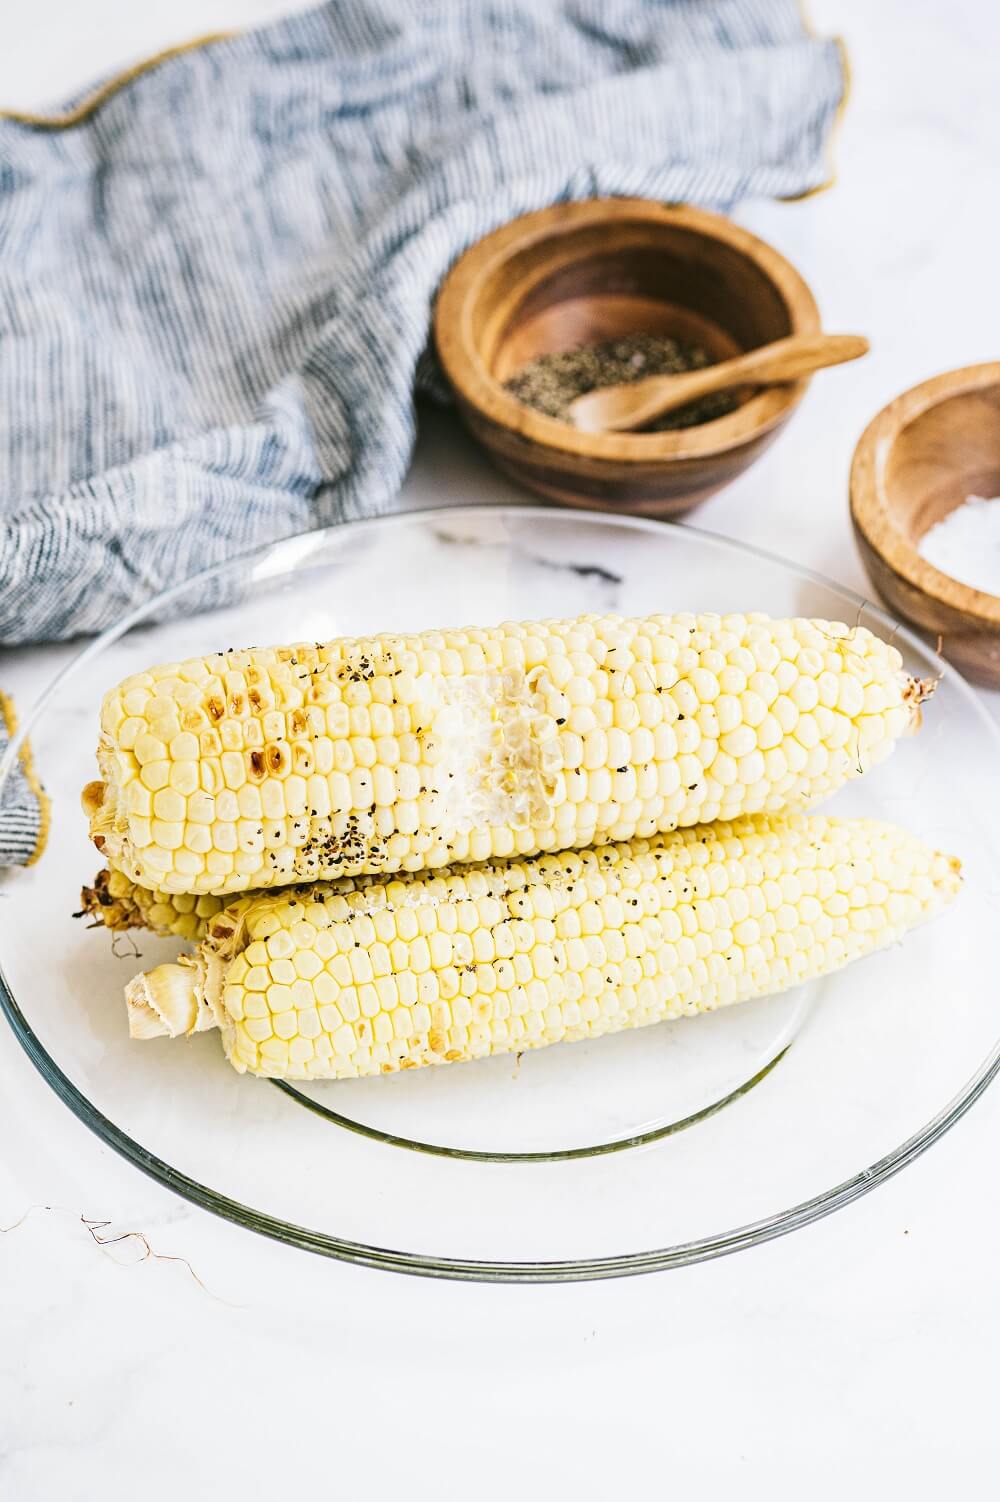 Bite into tasty, juicy corn